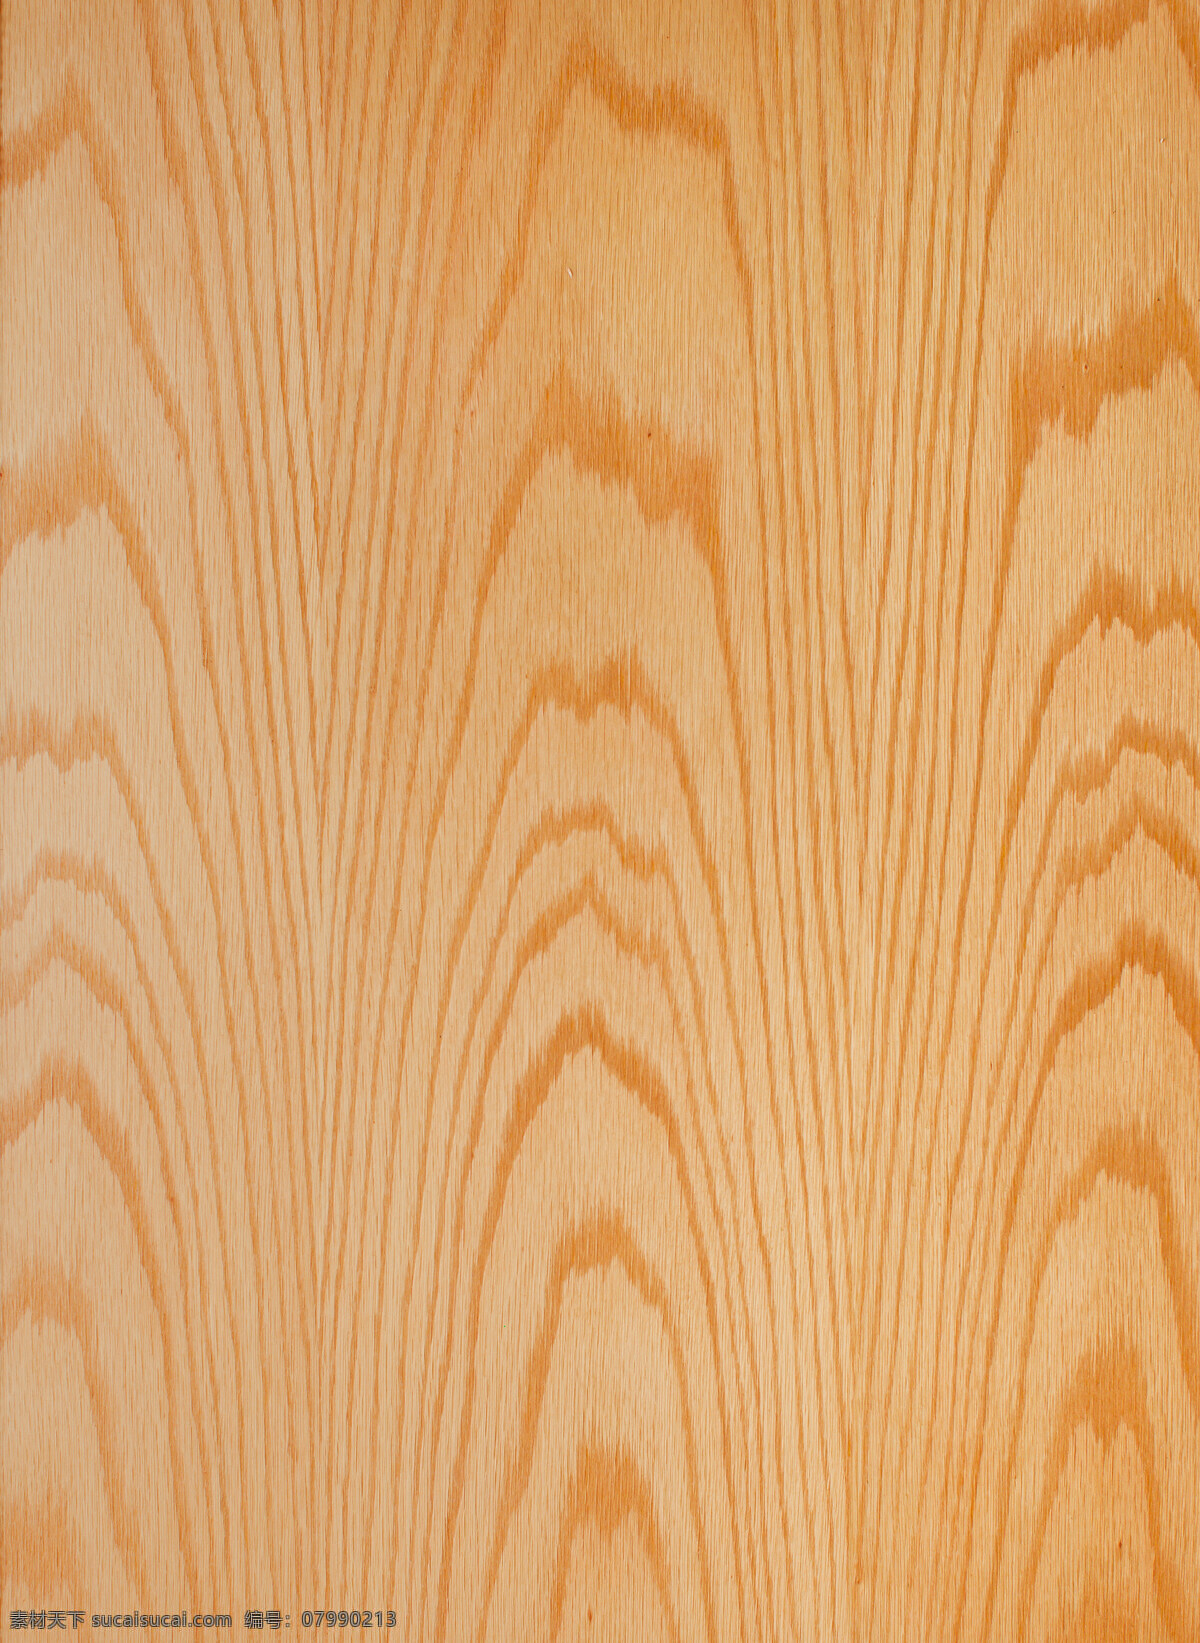 原木 纹理 装饰 木纹 面板 原木纹理 装饰木纹 面板图片 竖木纹 贴面板 木板 木板材质 贴图 木质 底纹 木板背景 旧木板 背景 建筑园林 板